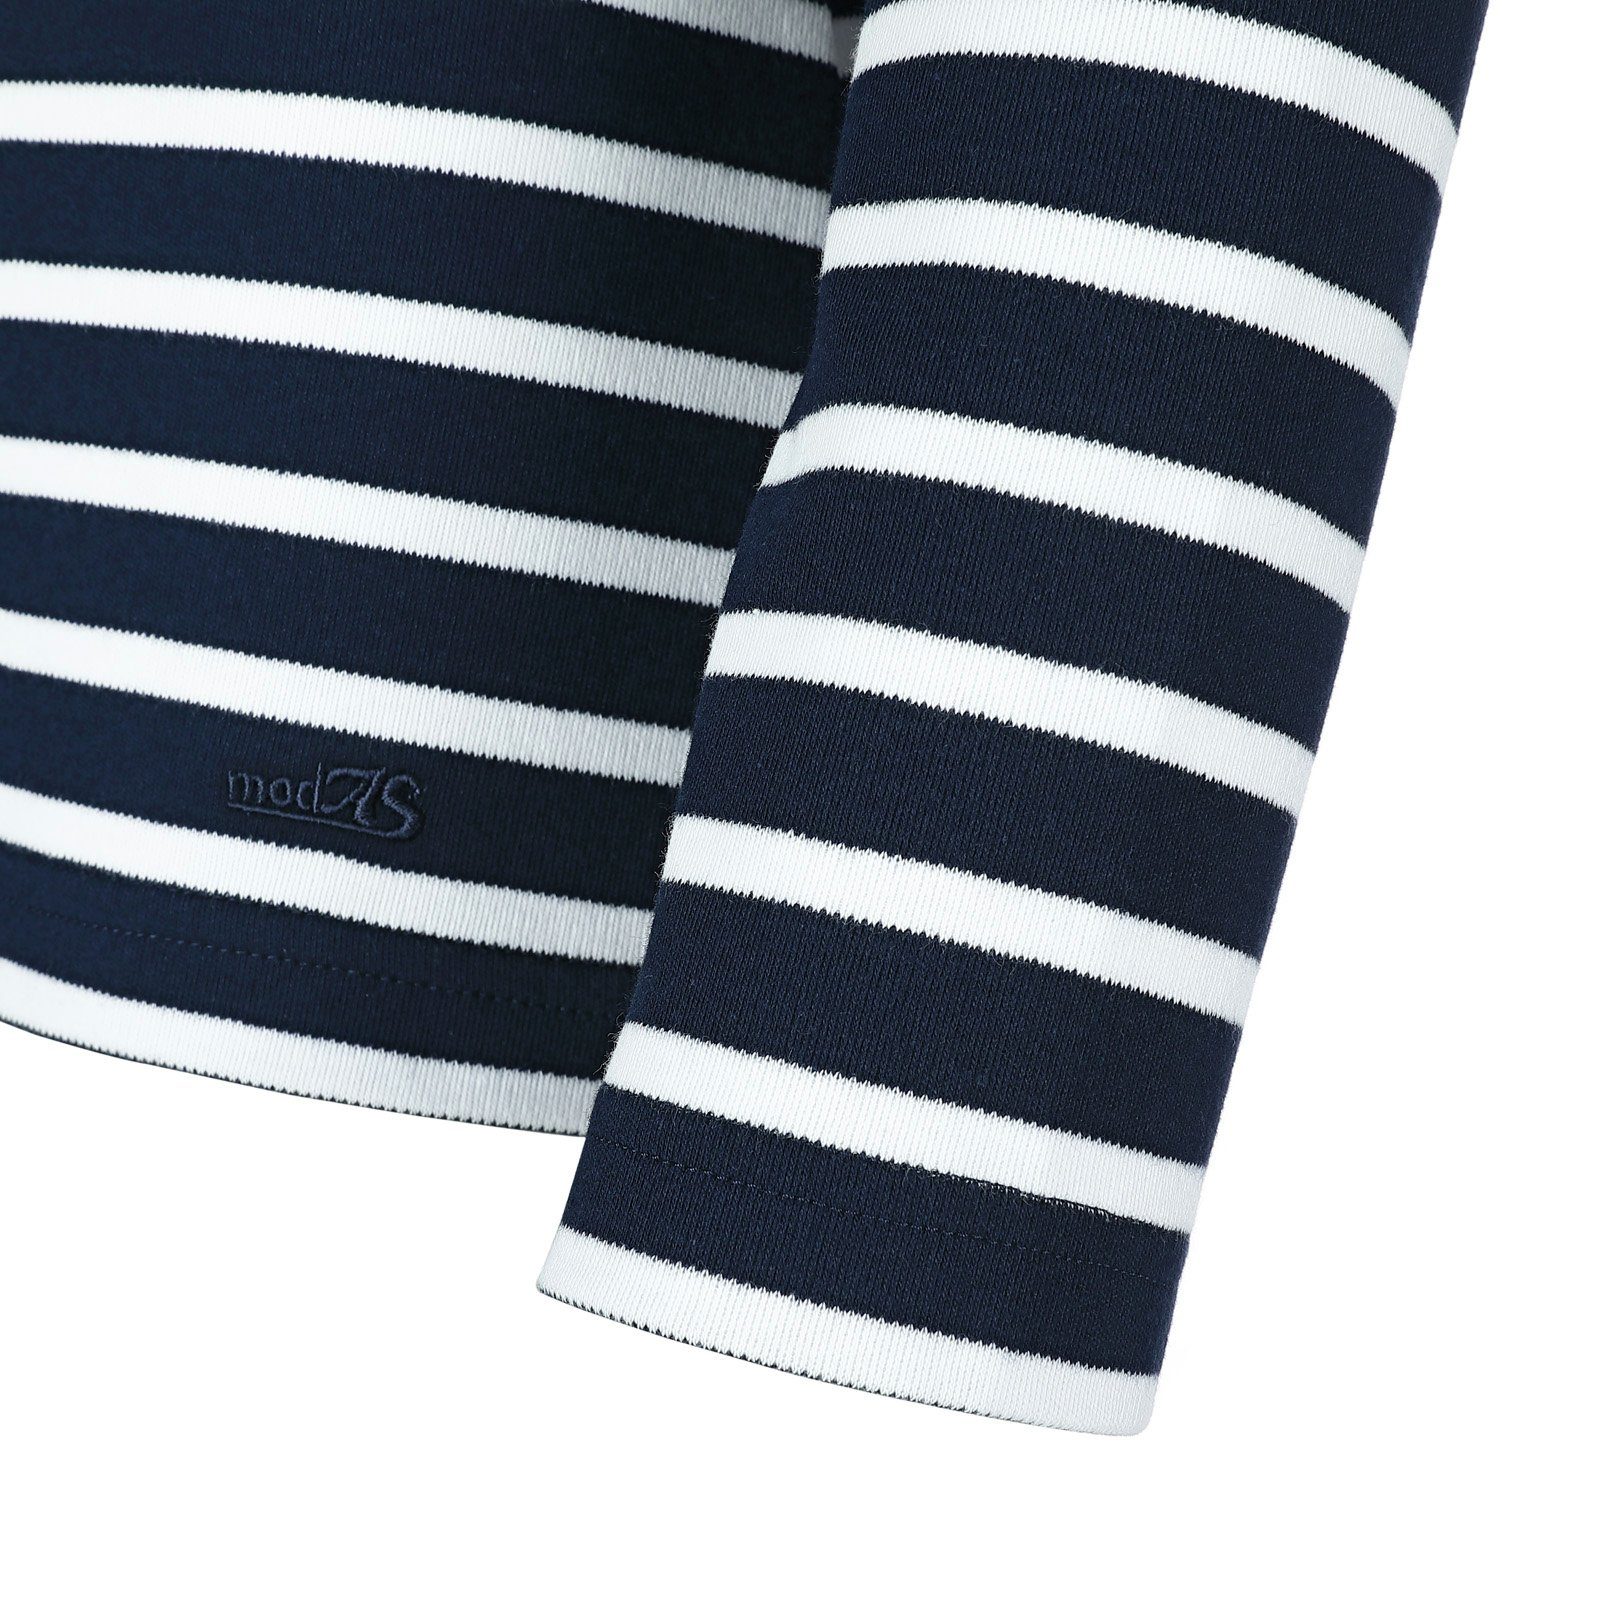 Langarm-Shirt modAS Streifen (05) Damen blau / weiß Bretonisches mit Langarmshirt Streifenshirt Baumwolle